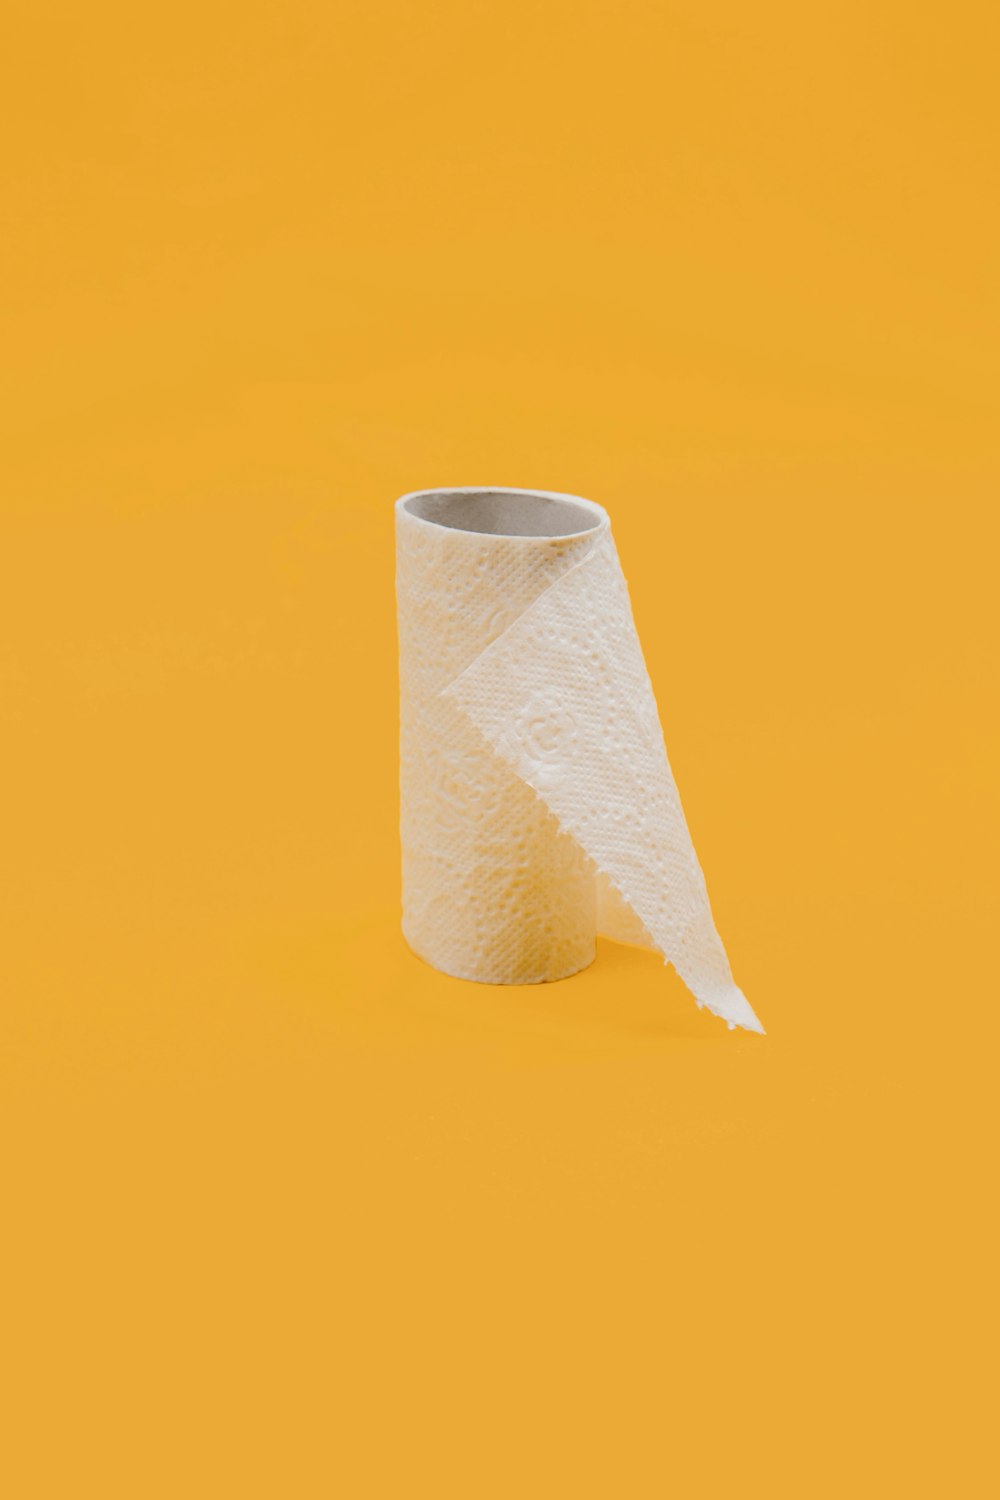 rollo de papel de seda blanco sobre superficie amarilla